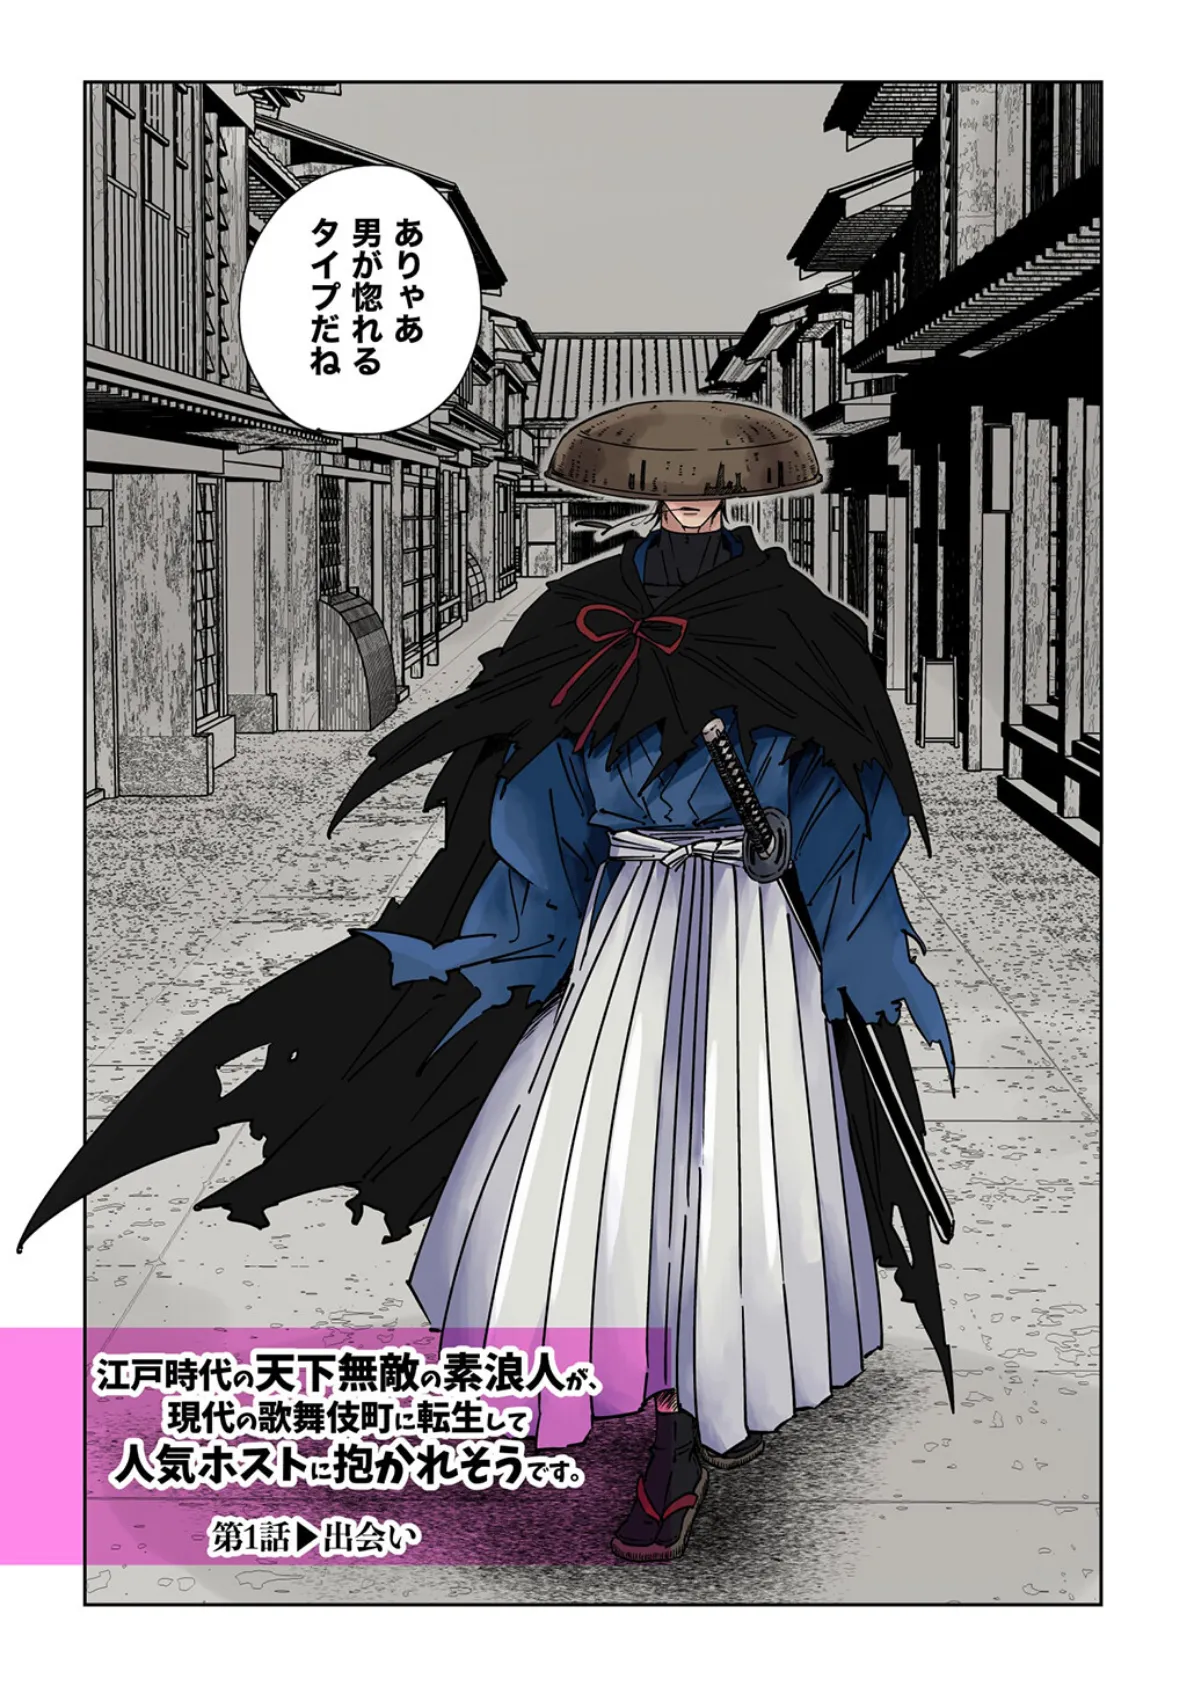 江戸時代の天下無敵の素浪人が、現代の歌舞伎町に転生して人気ホストに抱かれそうです。【R18版】Vol.1 4ページ